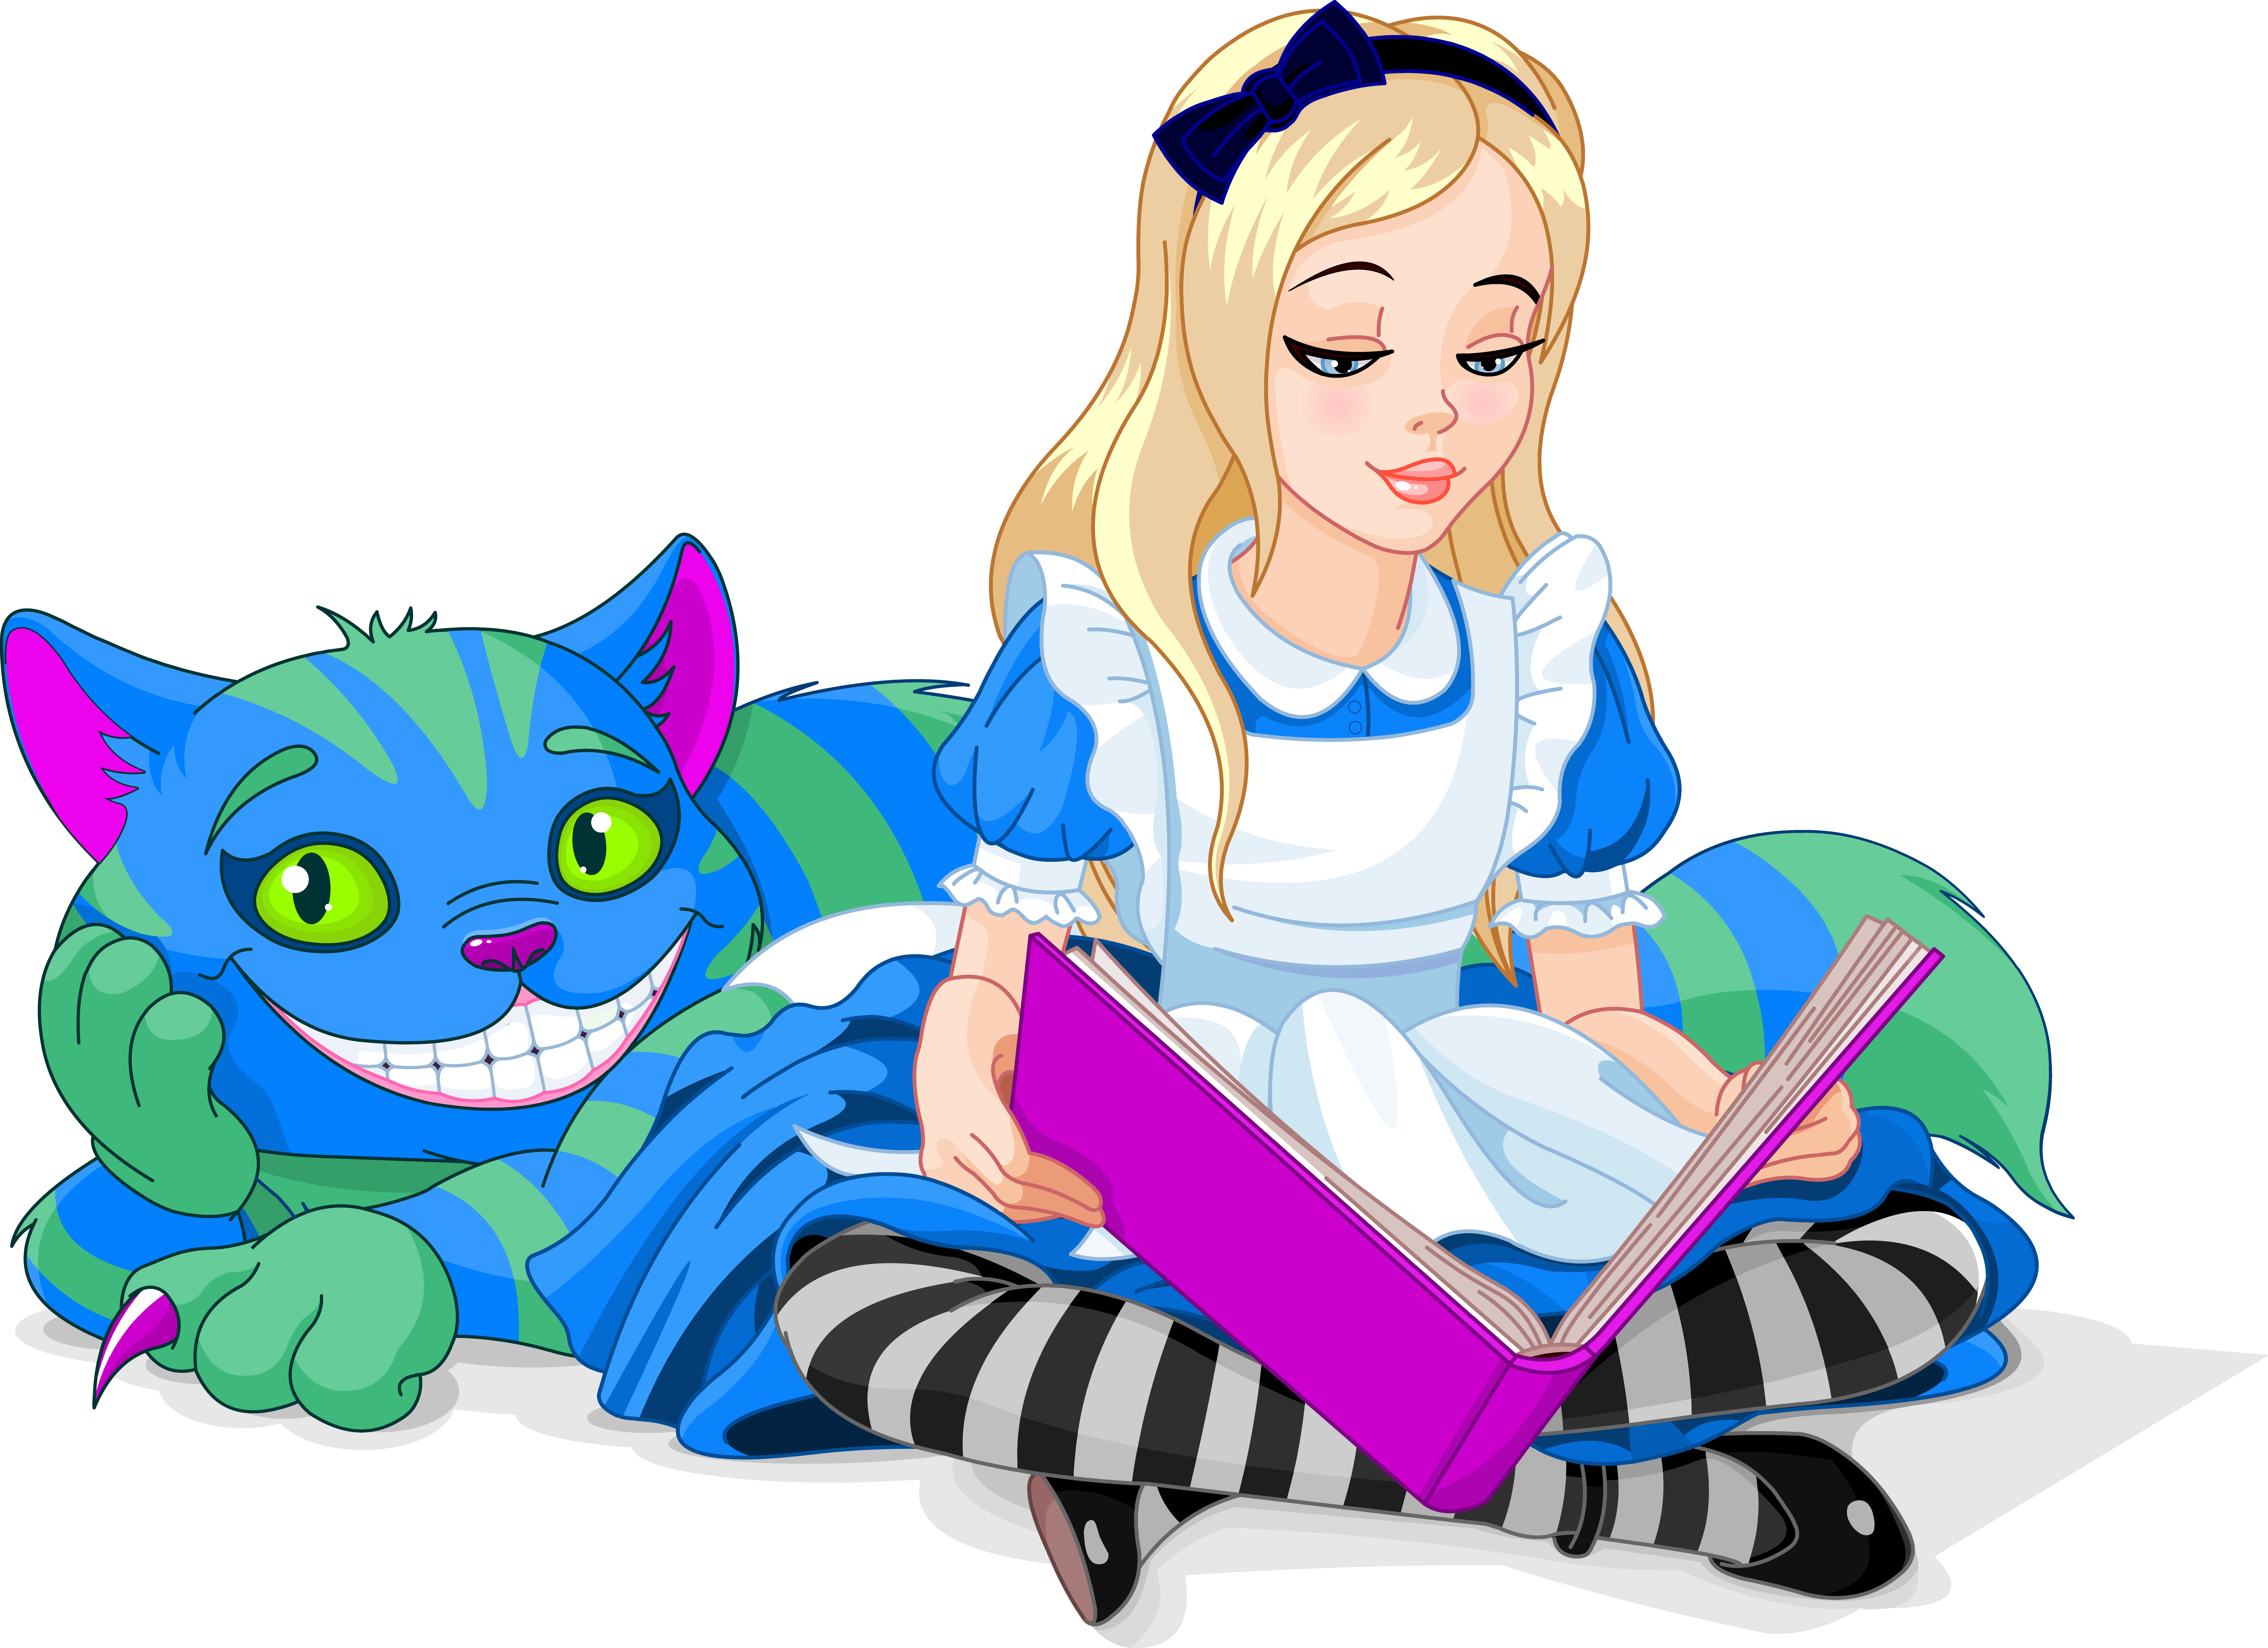 Алиса в стране чудес Чеширский кот и Алиса. Алиса и кот Чешир в стране чудес. Алиса в стране чудес кот и Алиса. Алиса в стране чудес Алиса читает книгу. Коты персонажи книг